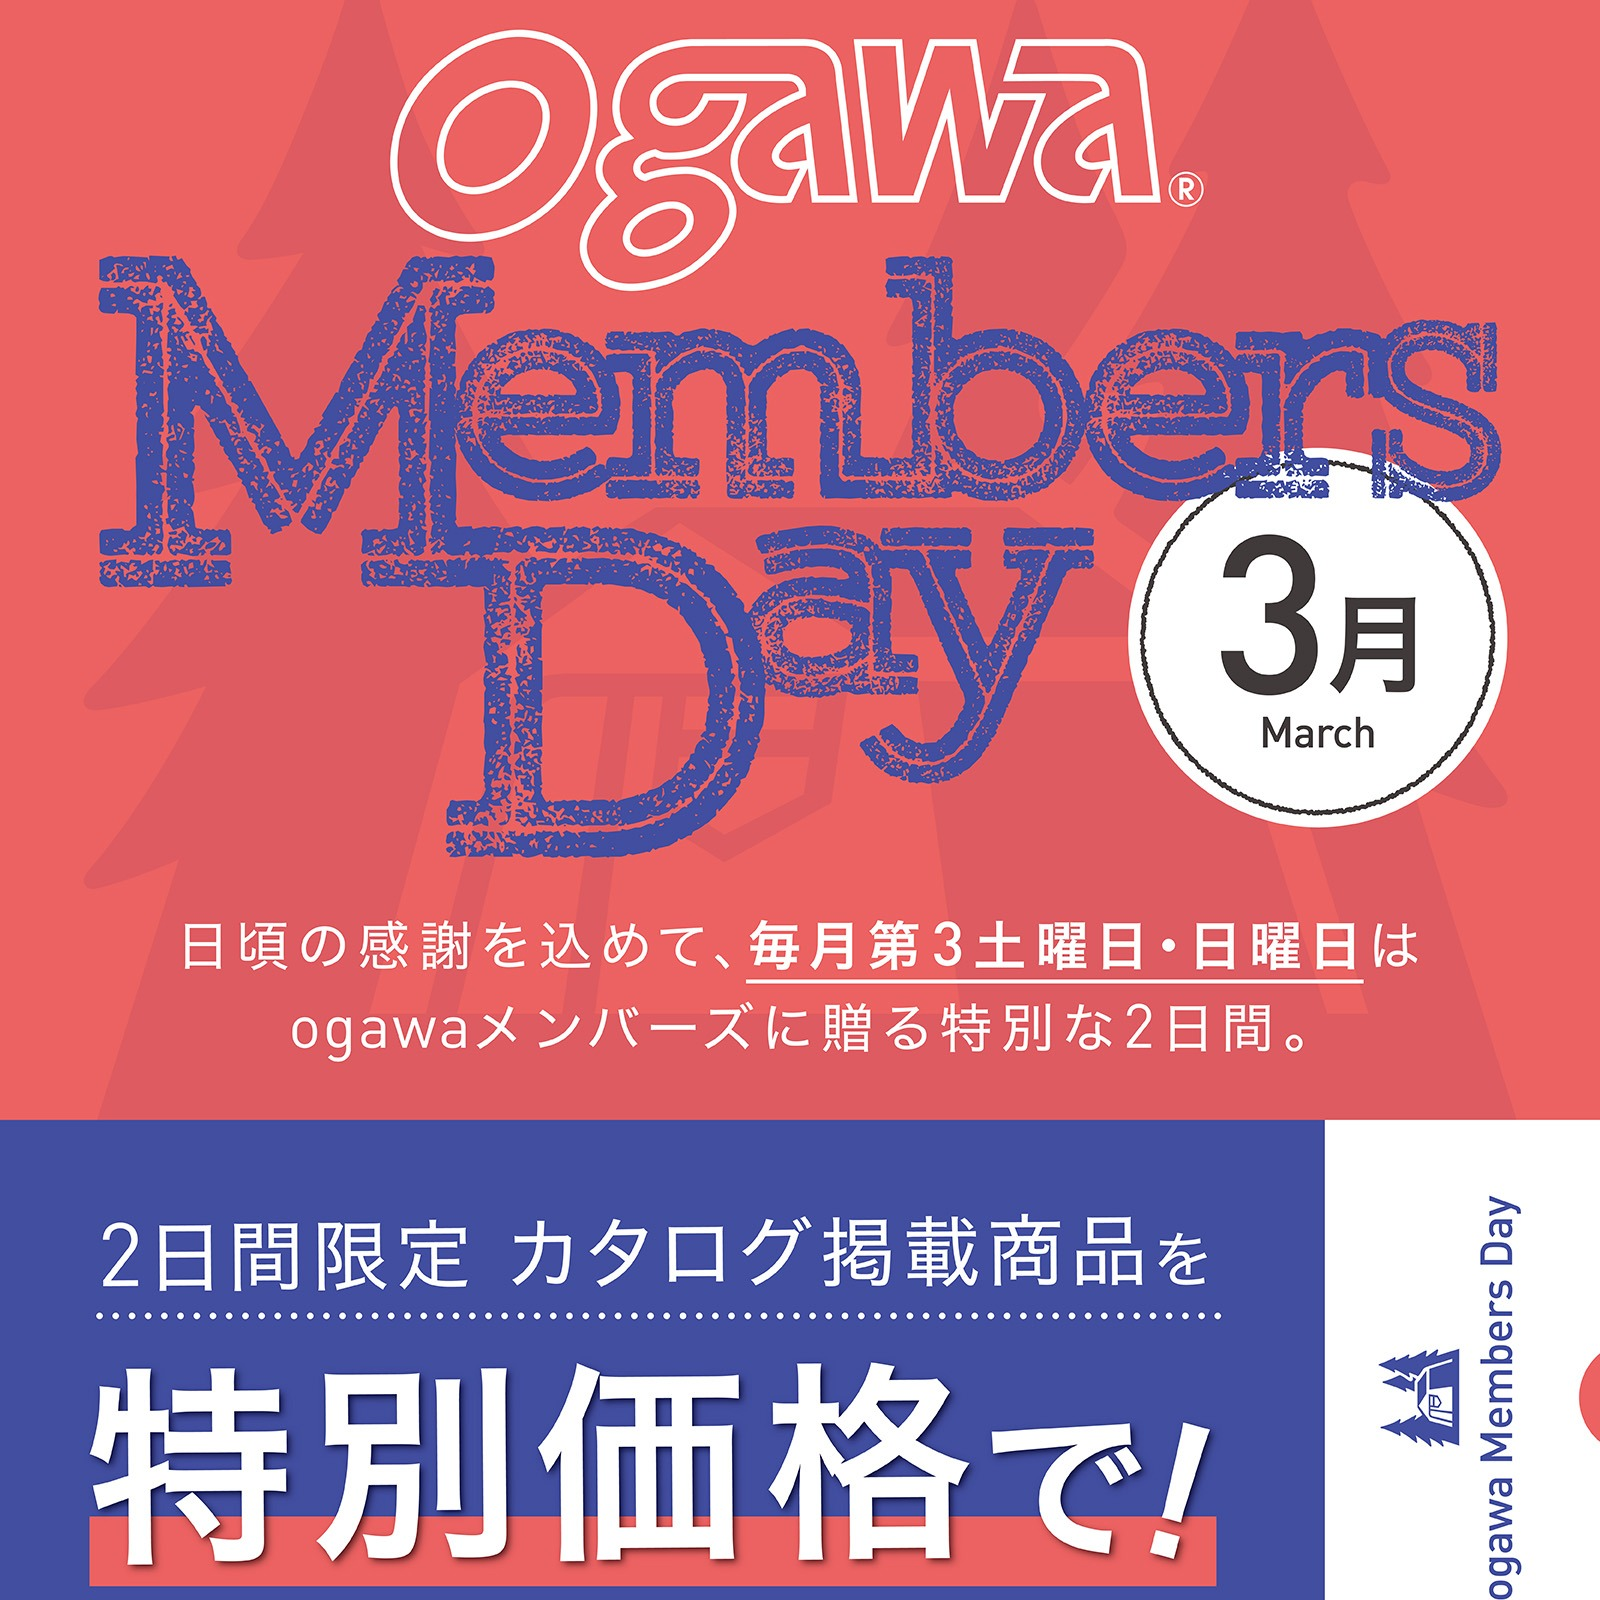 ⛺【アウトドアグッズが特別価格】ogawa Members Day 3/16(土)・17(日)